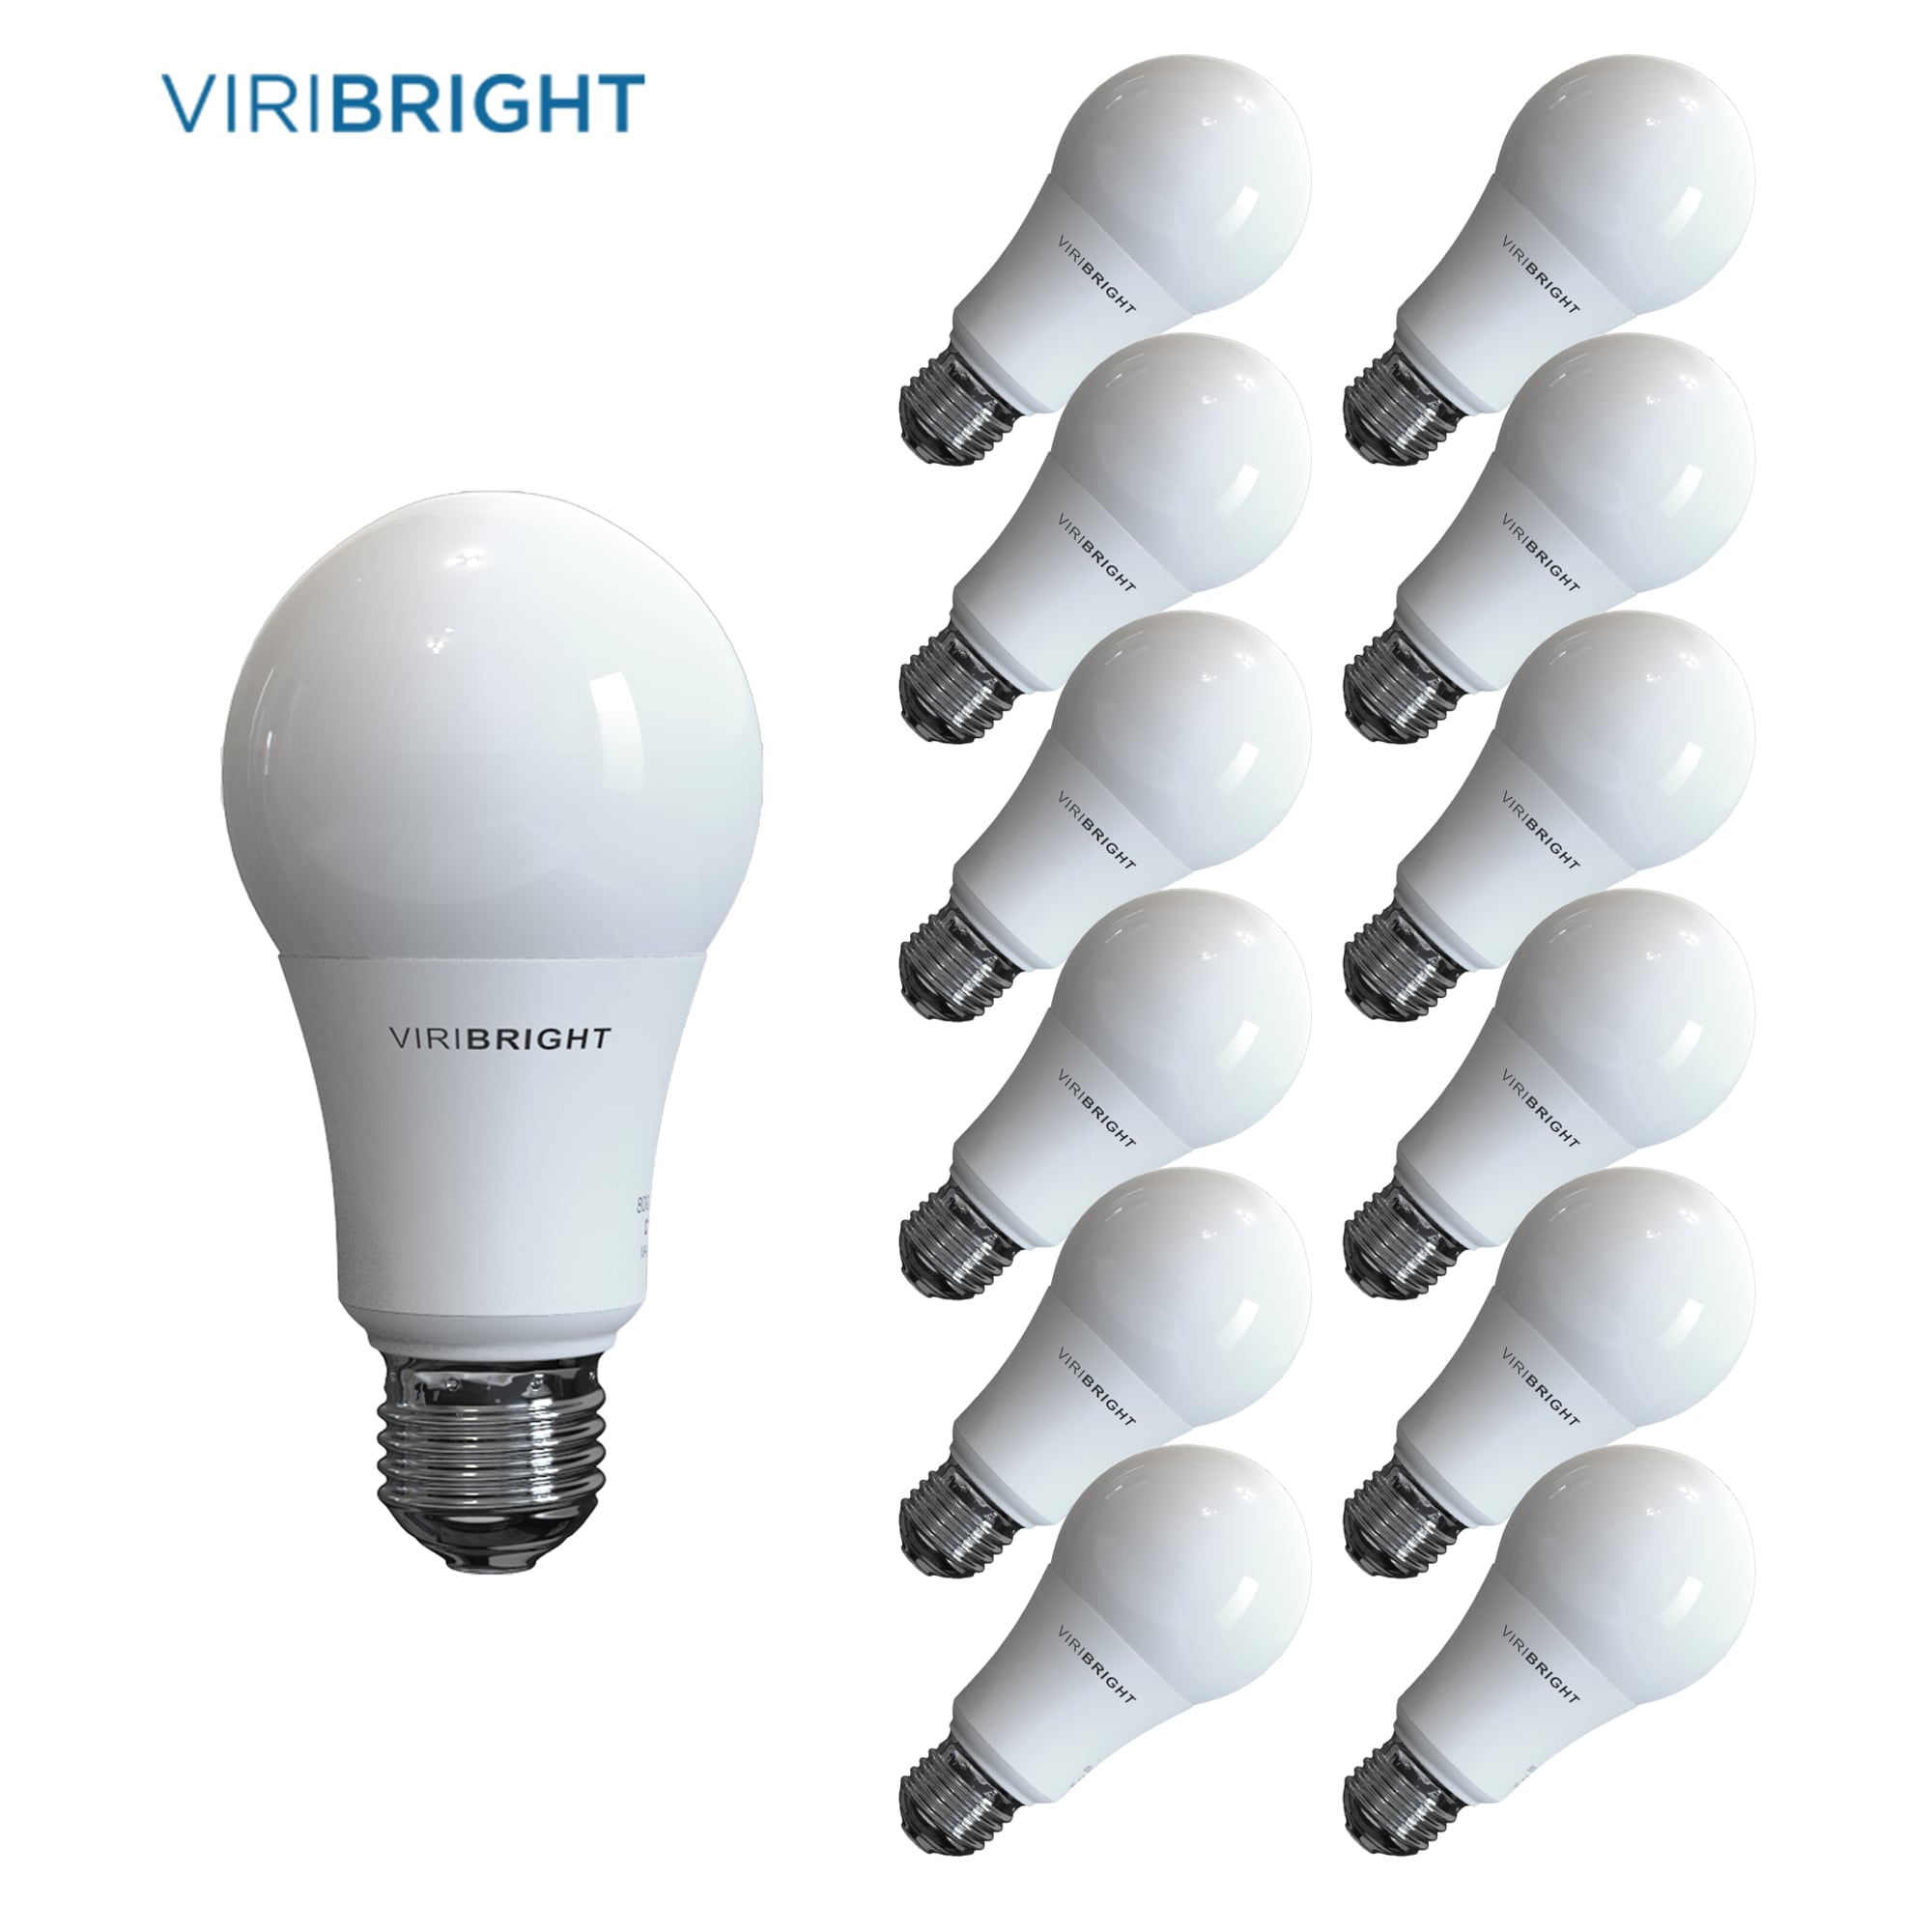 Viribright 640339 60-Watt Equivalent Cool White (4000K) A19 E26 Base LED Light Bulbs (12-Pack)